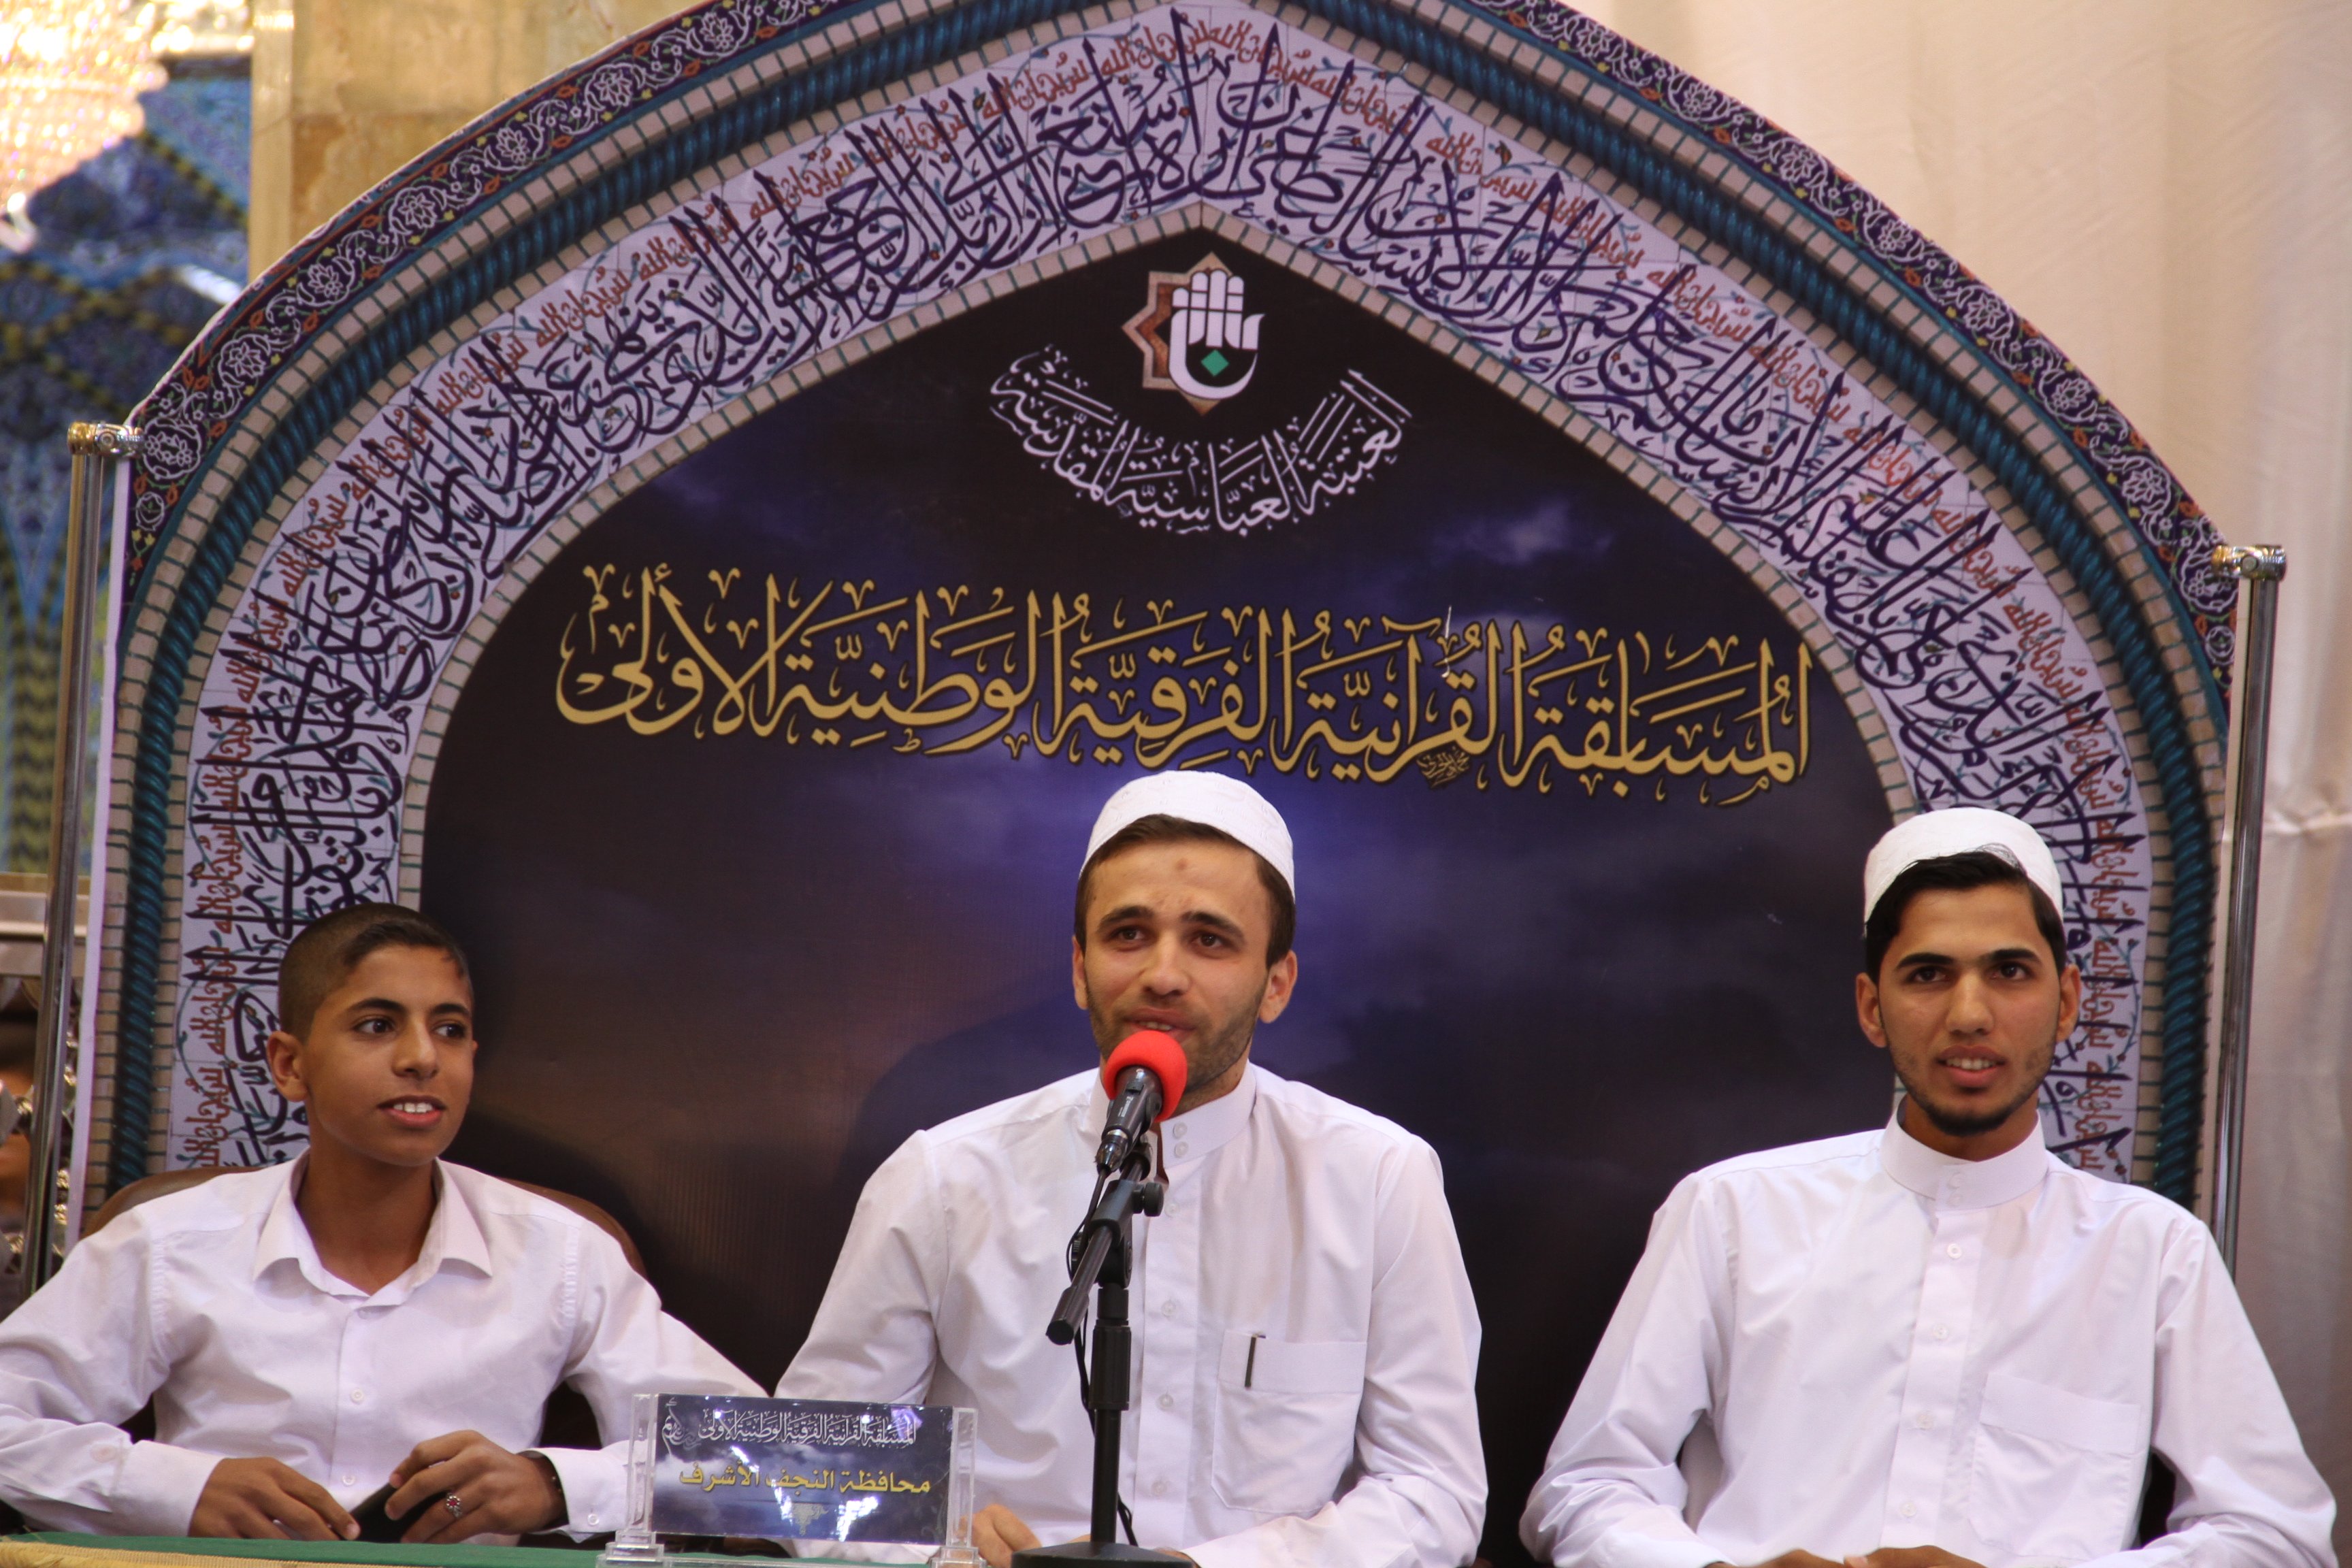 نتائج المرحلة الثالثة من المسابقة القرآنية الفرقية الوطنية الأولى